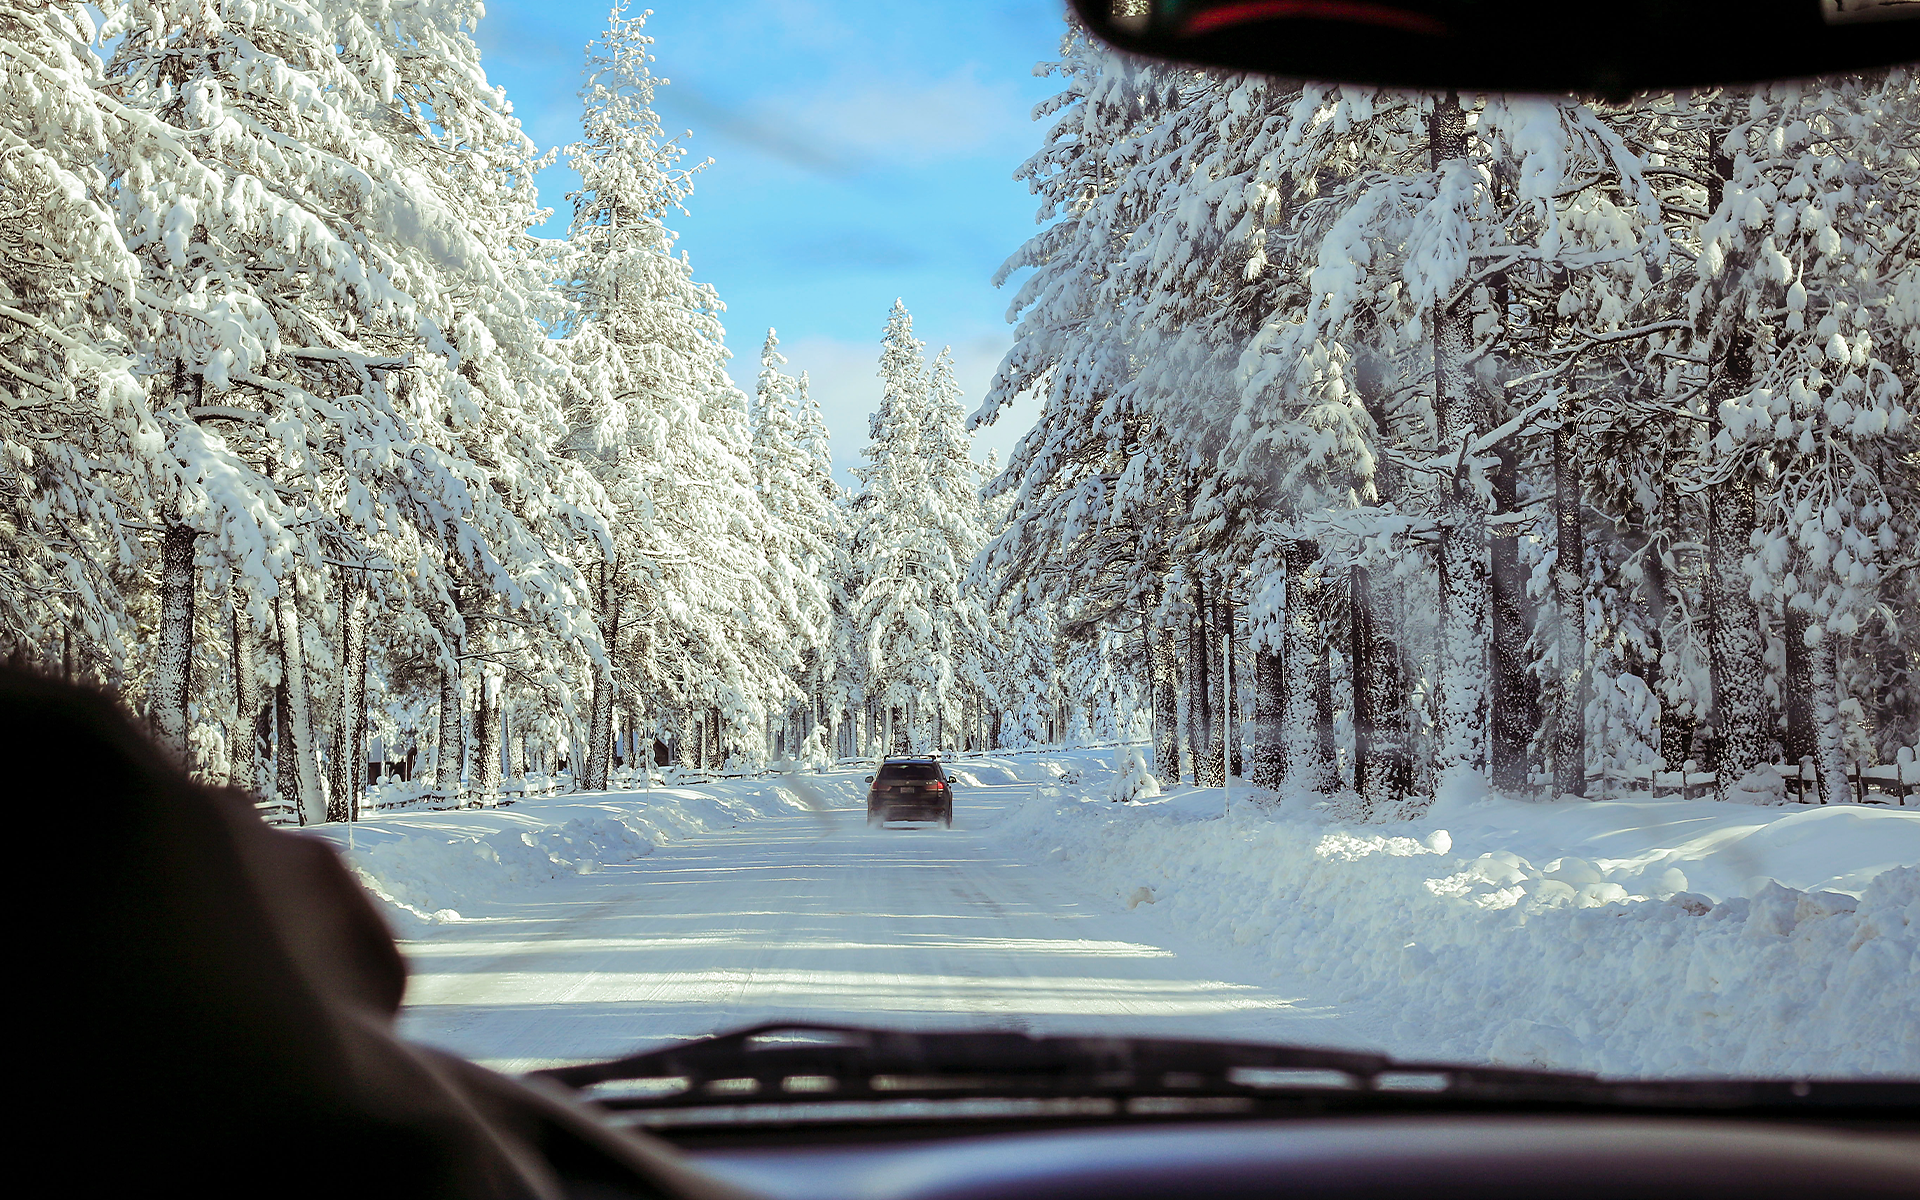 E-Autos bei Schnee und Eis: 6 Tipps für sorgenfreies Fahren